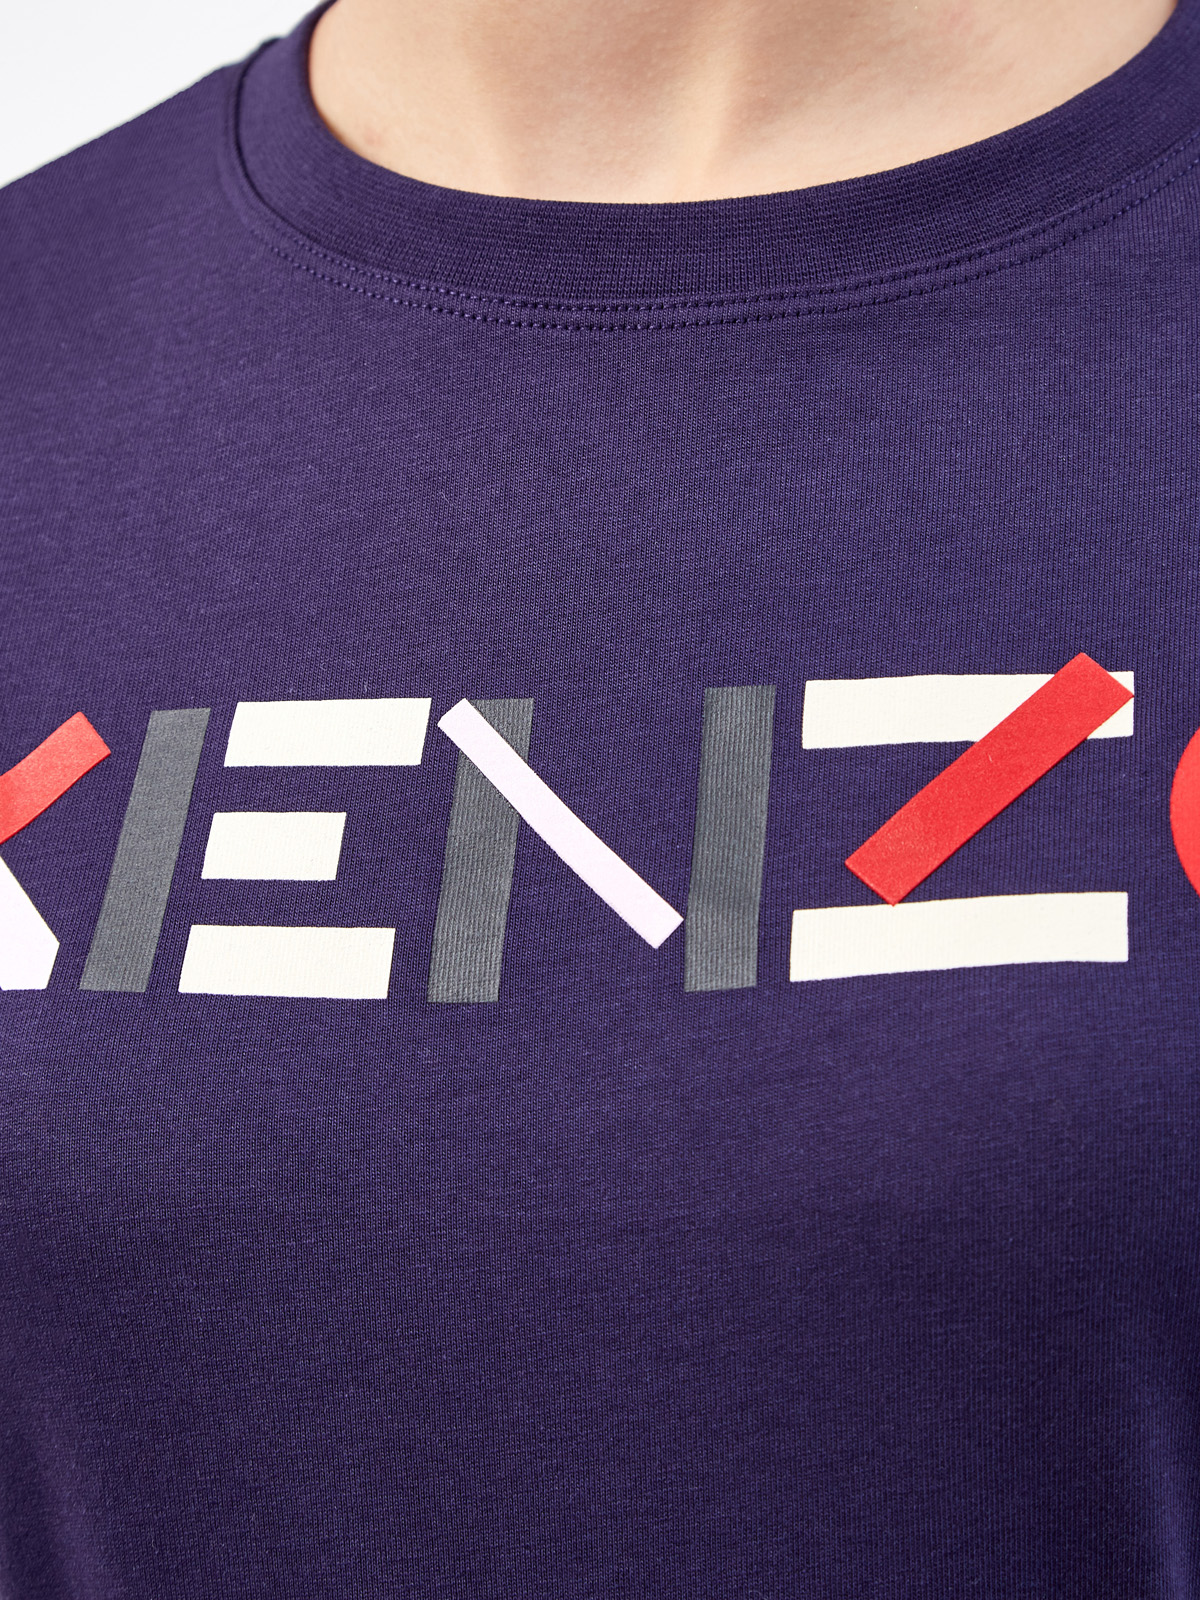 Однотонная футболка из натурального хлопка с принтом KENZO, цвет синий, размер M;L;S - фото 5